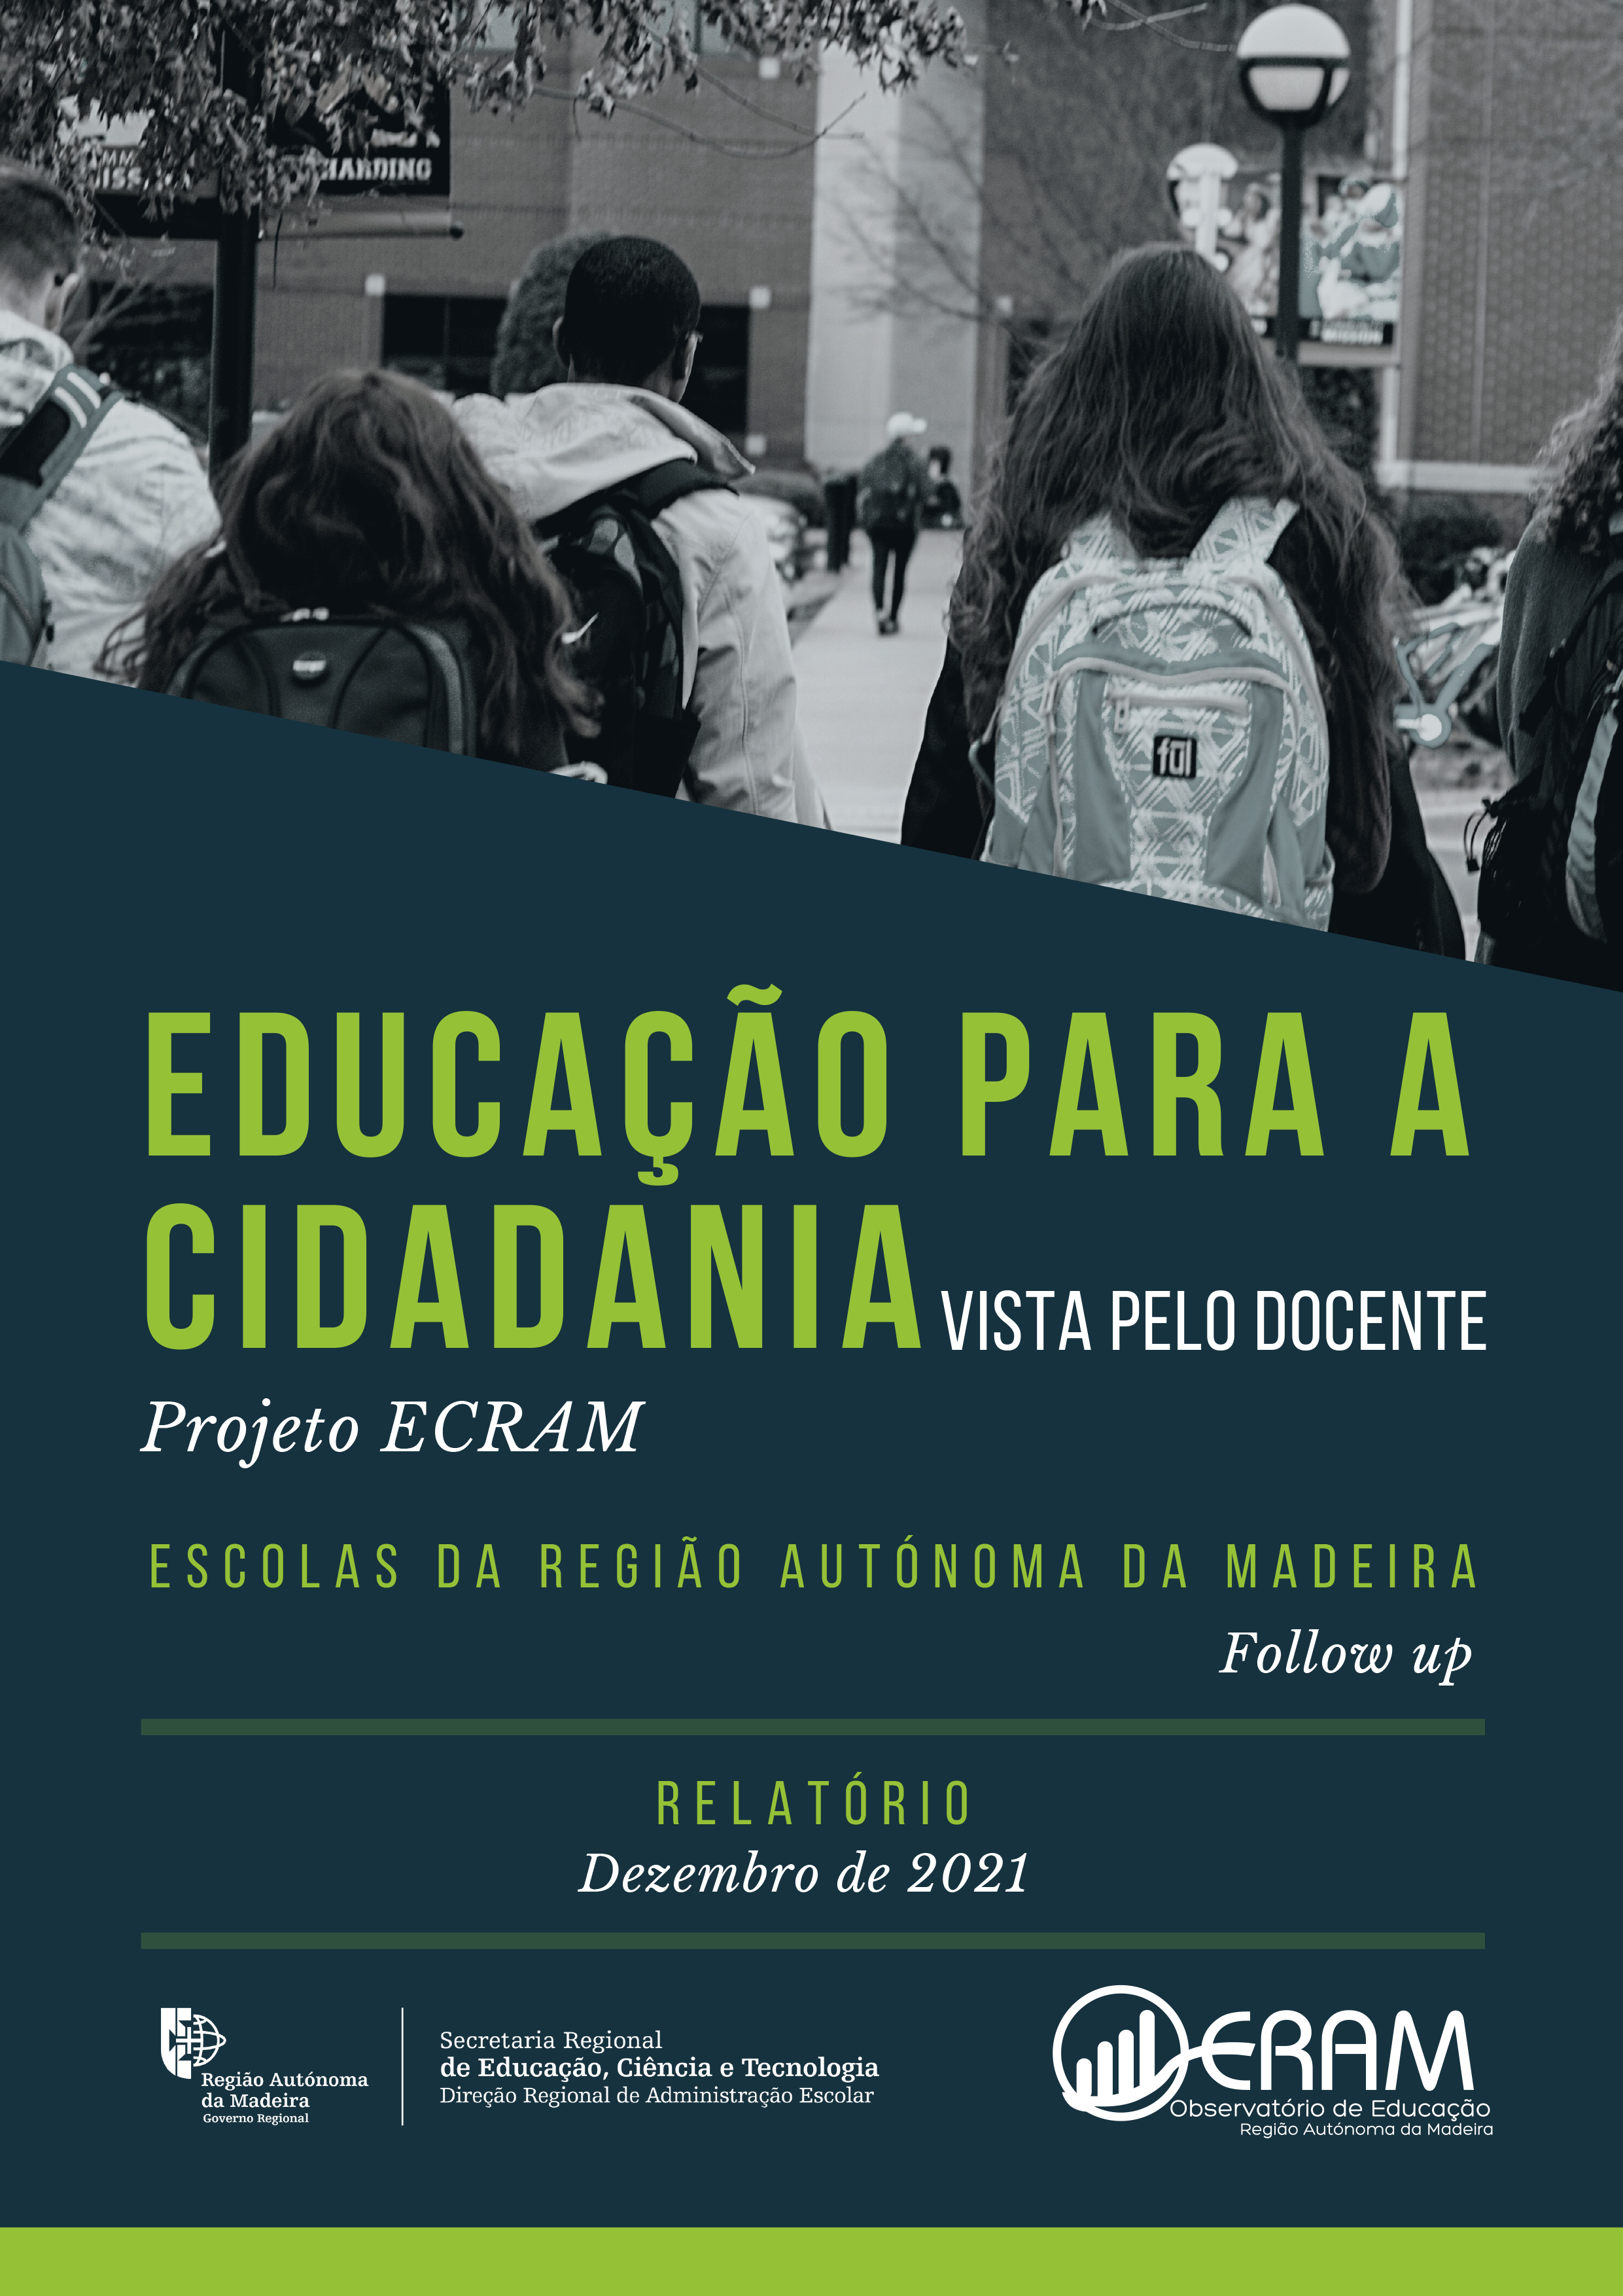 Estudo EDUCAÇÃO PARA A CIDADANIA-Vista pelo docente (Projeto ECRAM) - follow up